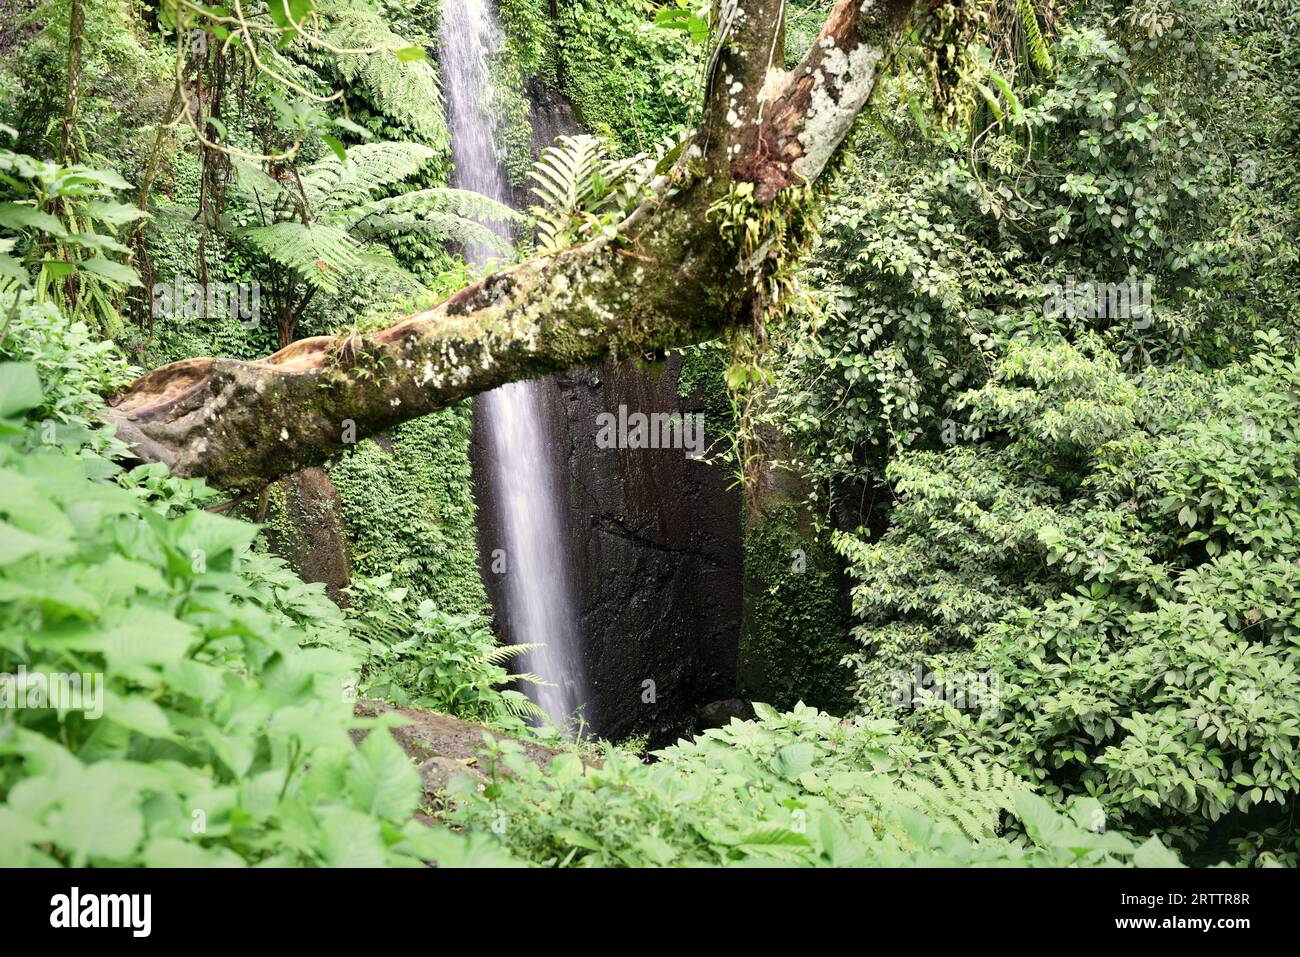 Blick auf einen Wasserfall am Fuße des Mount Salak in Bogor, West Java, Indonesien. Wissenschaftler können den Klang und das Aussehen eines Wasserfalls nutzen, um Veränderungen in seinem Fluss zu verfolgen, während menschliche Eingriffe und der Klimawandel den Wasserspiegel beeinflussen, so ein artikel aus dem Jahr 2021, der von der American Geophysical Union veröffentlicht wurde und über ScienceDaily zugänglich ist. Das Wasser der Wasserfälle ist wertvoll für Wasserkraft, Bewässerung und zur Unterstützung von Flusslebensräumen. "Das Aussehen des Wasserfalls und die Akustik sind außerdem wichtige Aspekte für Erholung und Tourismus", schrieb ich Schalko und R. M. Boes in ihrer Arbeit, die als Referenz diente,... Stockfoto